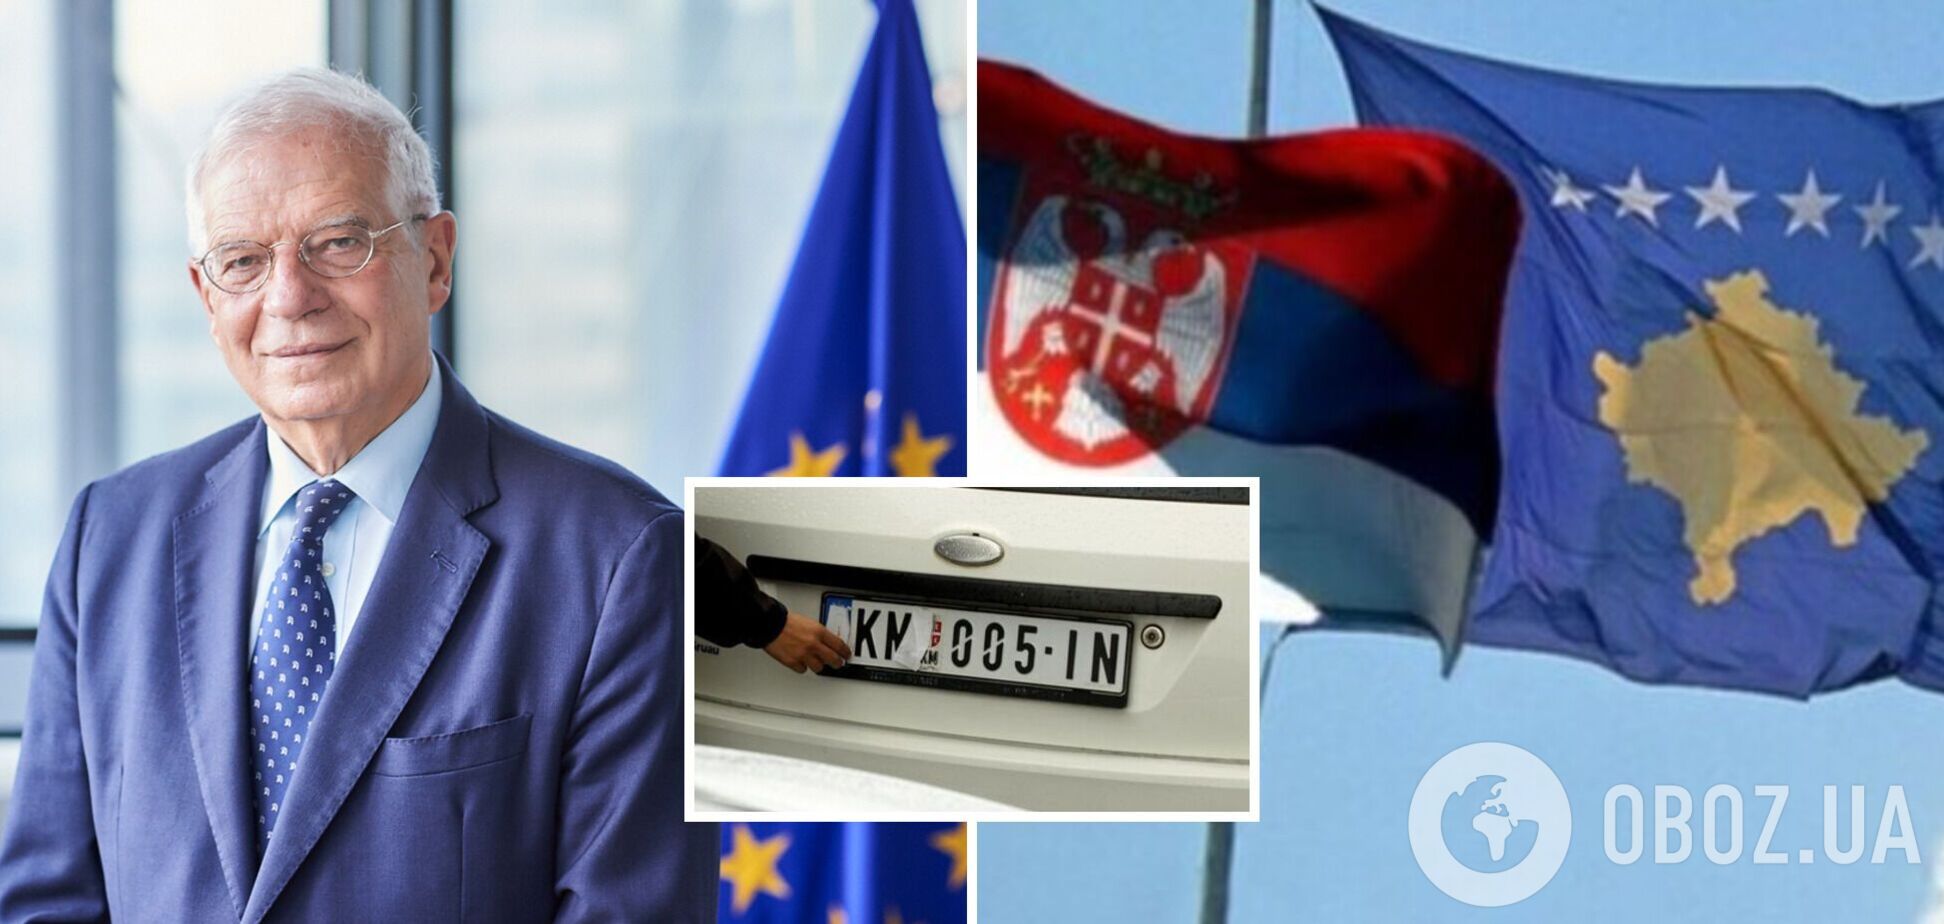 Сербия и Косово заключили соглашение о признании автомобильных номеров: что известно